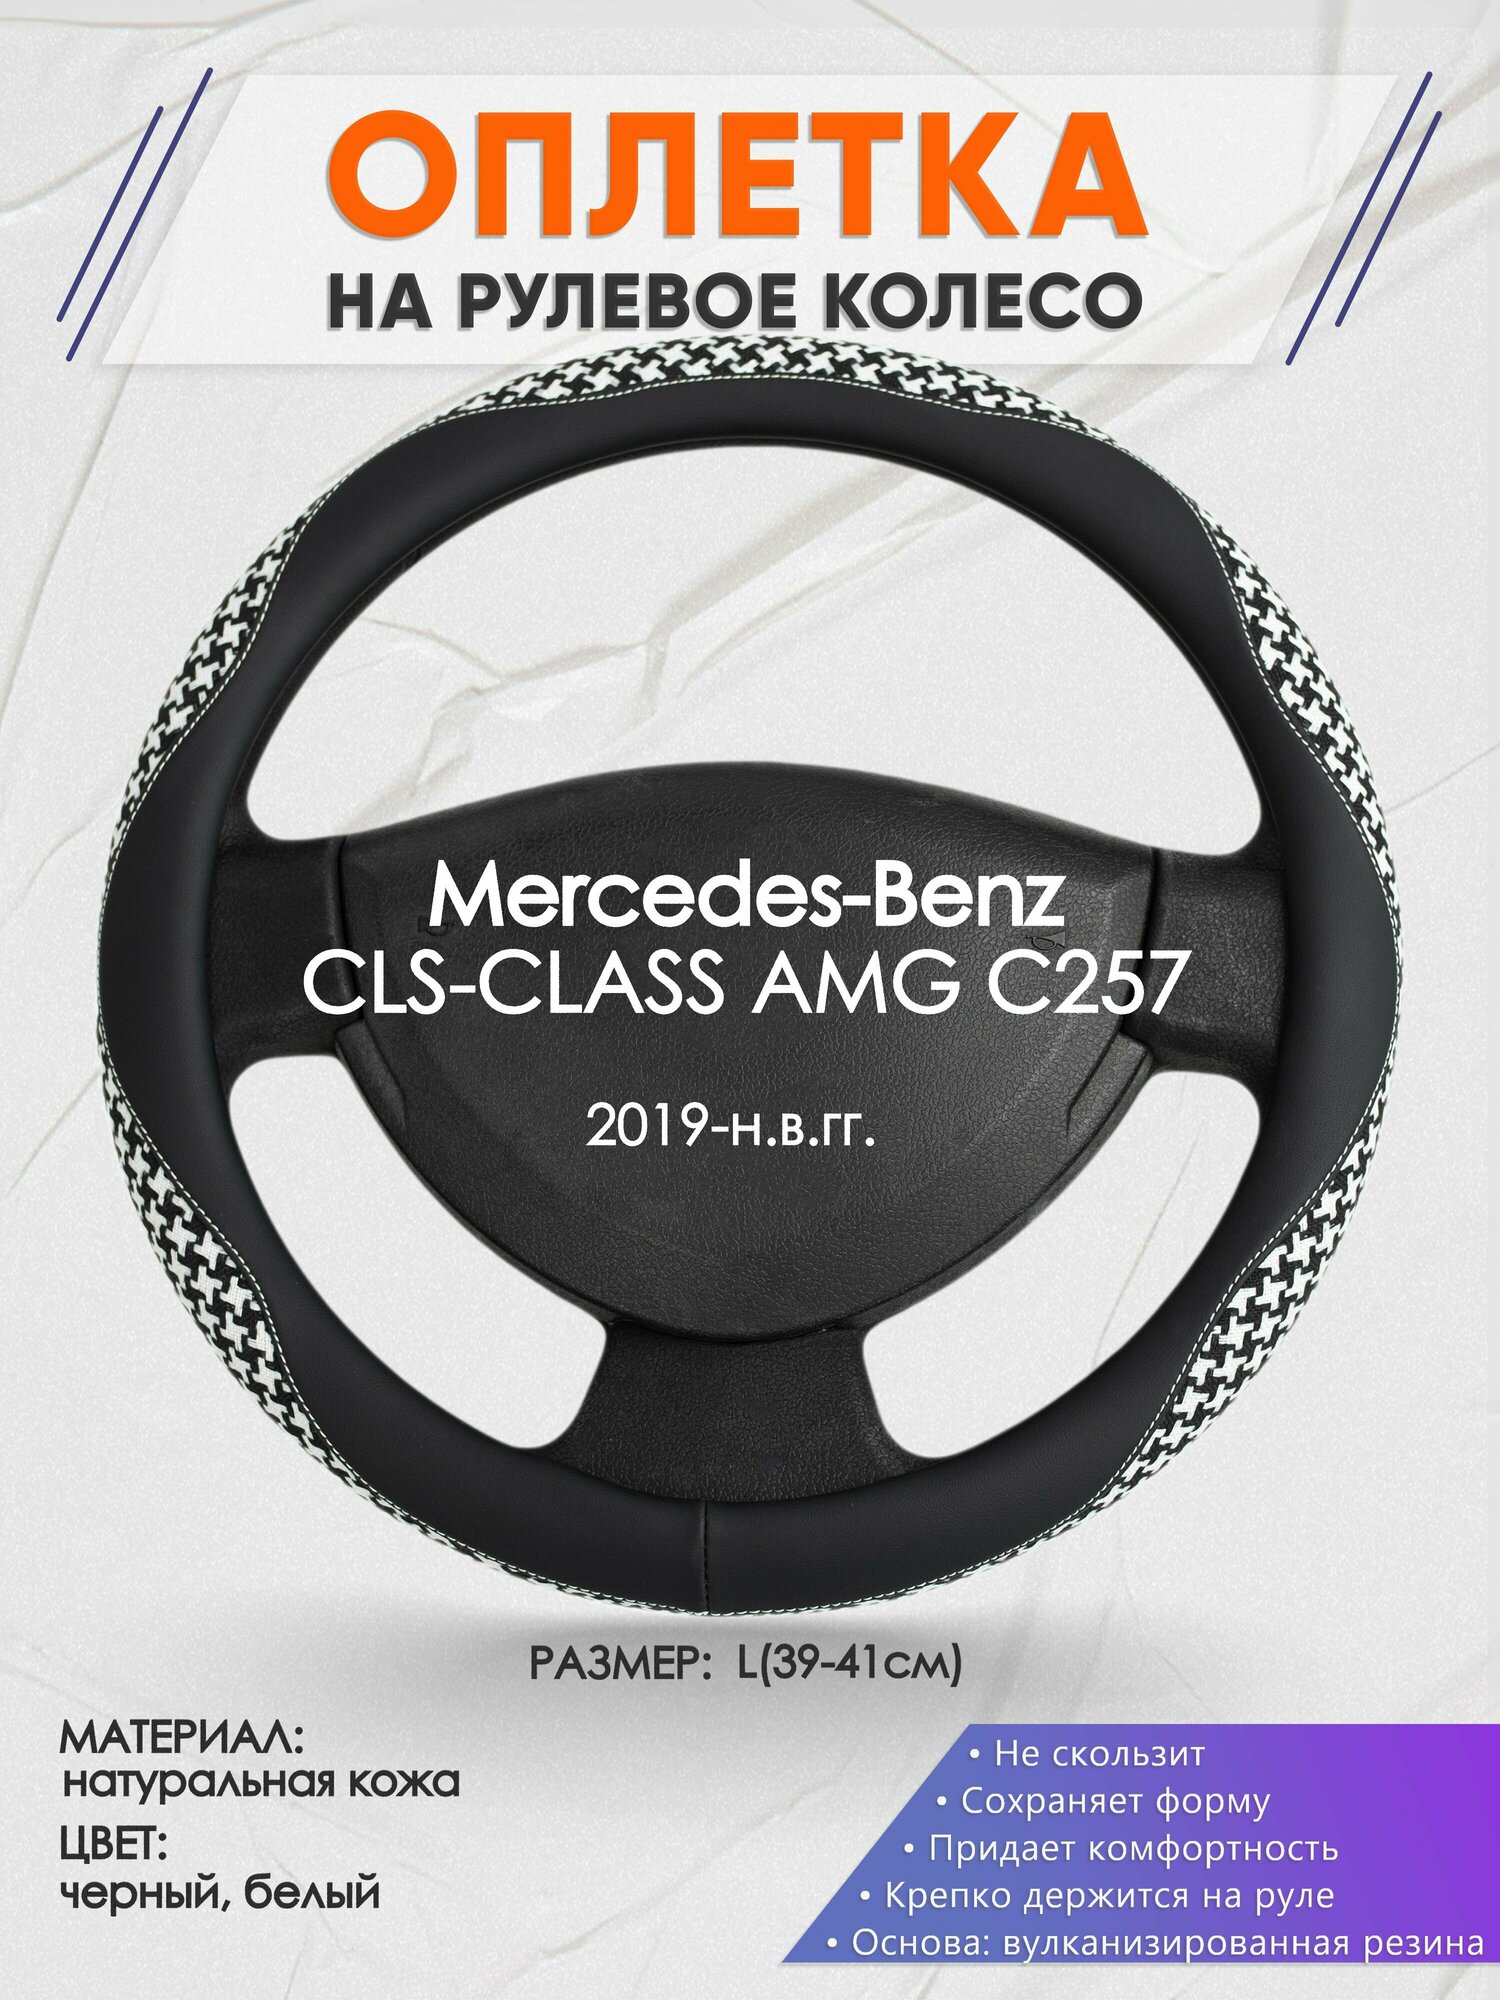 Оплетка на руль для Mercedes-Benz CLS-CLASS AMG C257(Мерседес Бенц СЛС класс) 2019-н. в, L(39-41см), Натуральная кожа 21